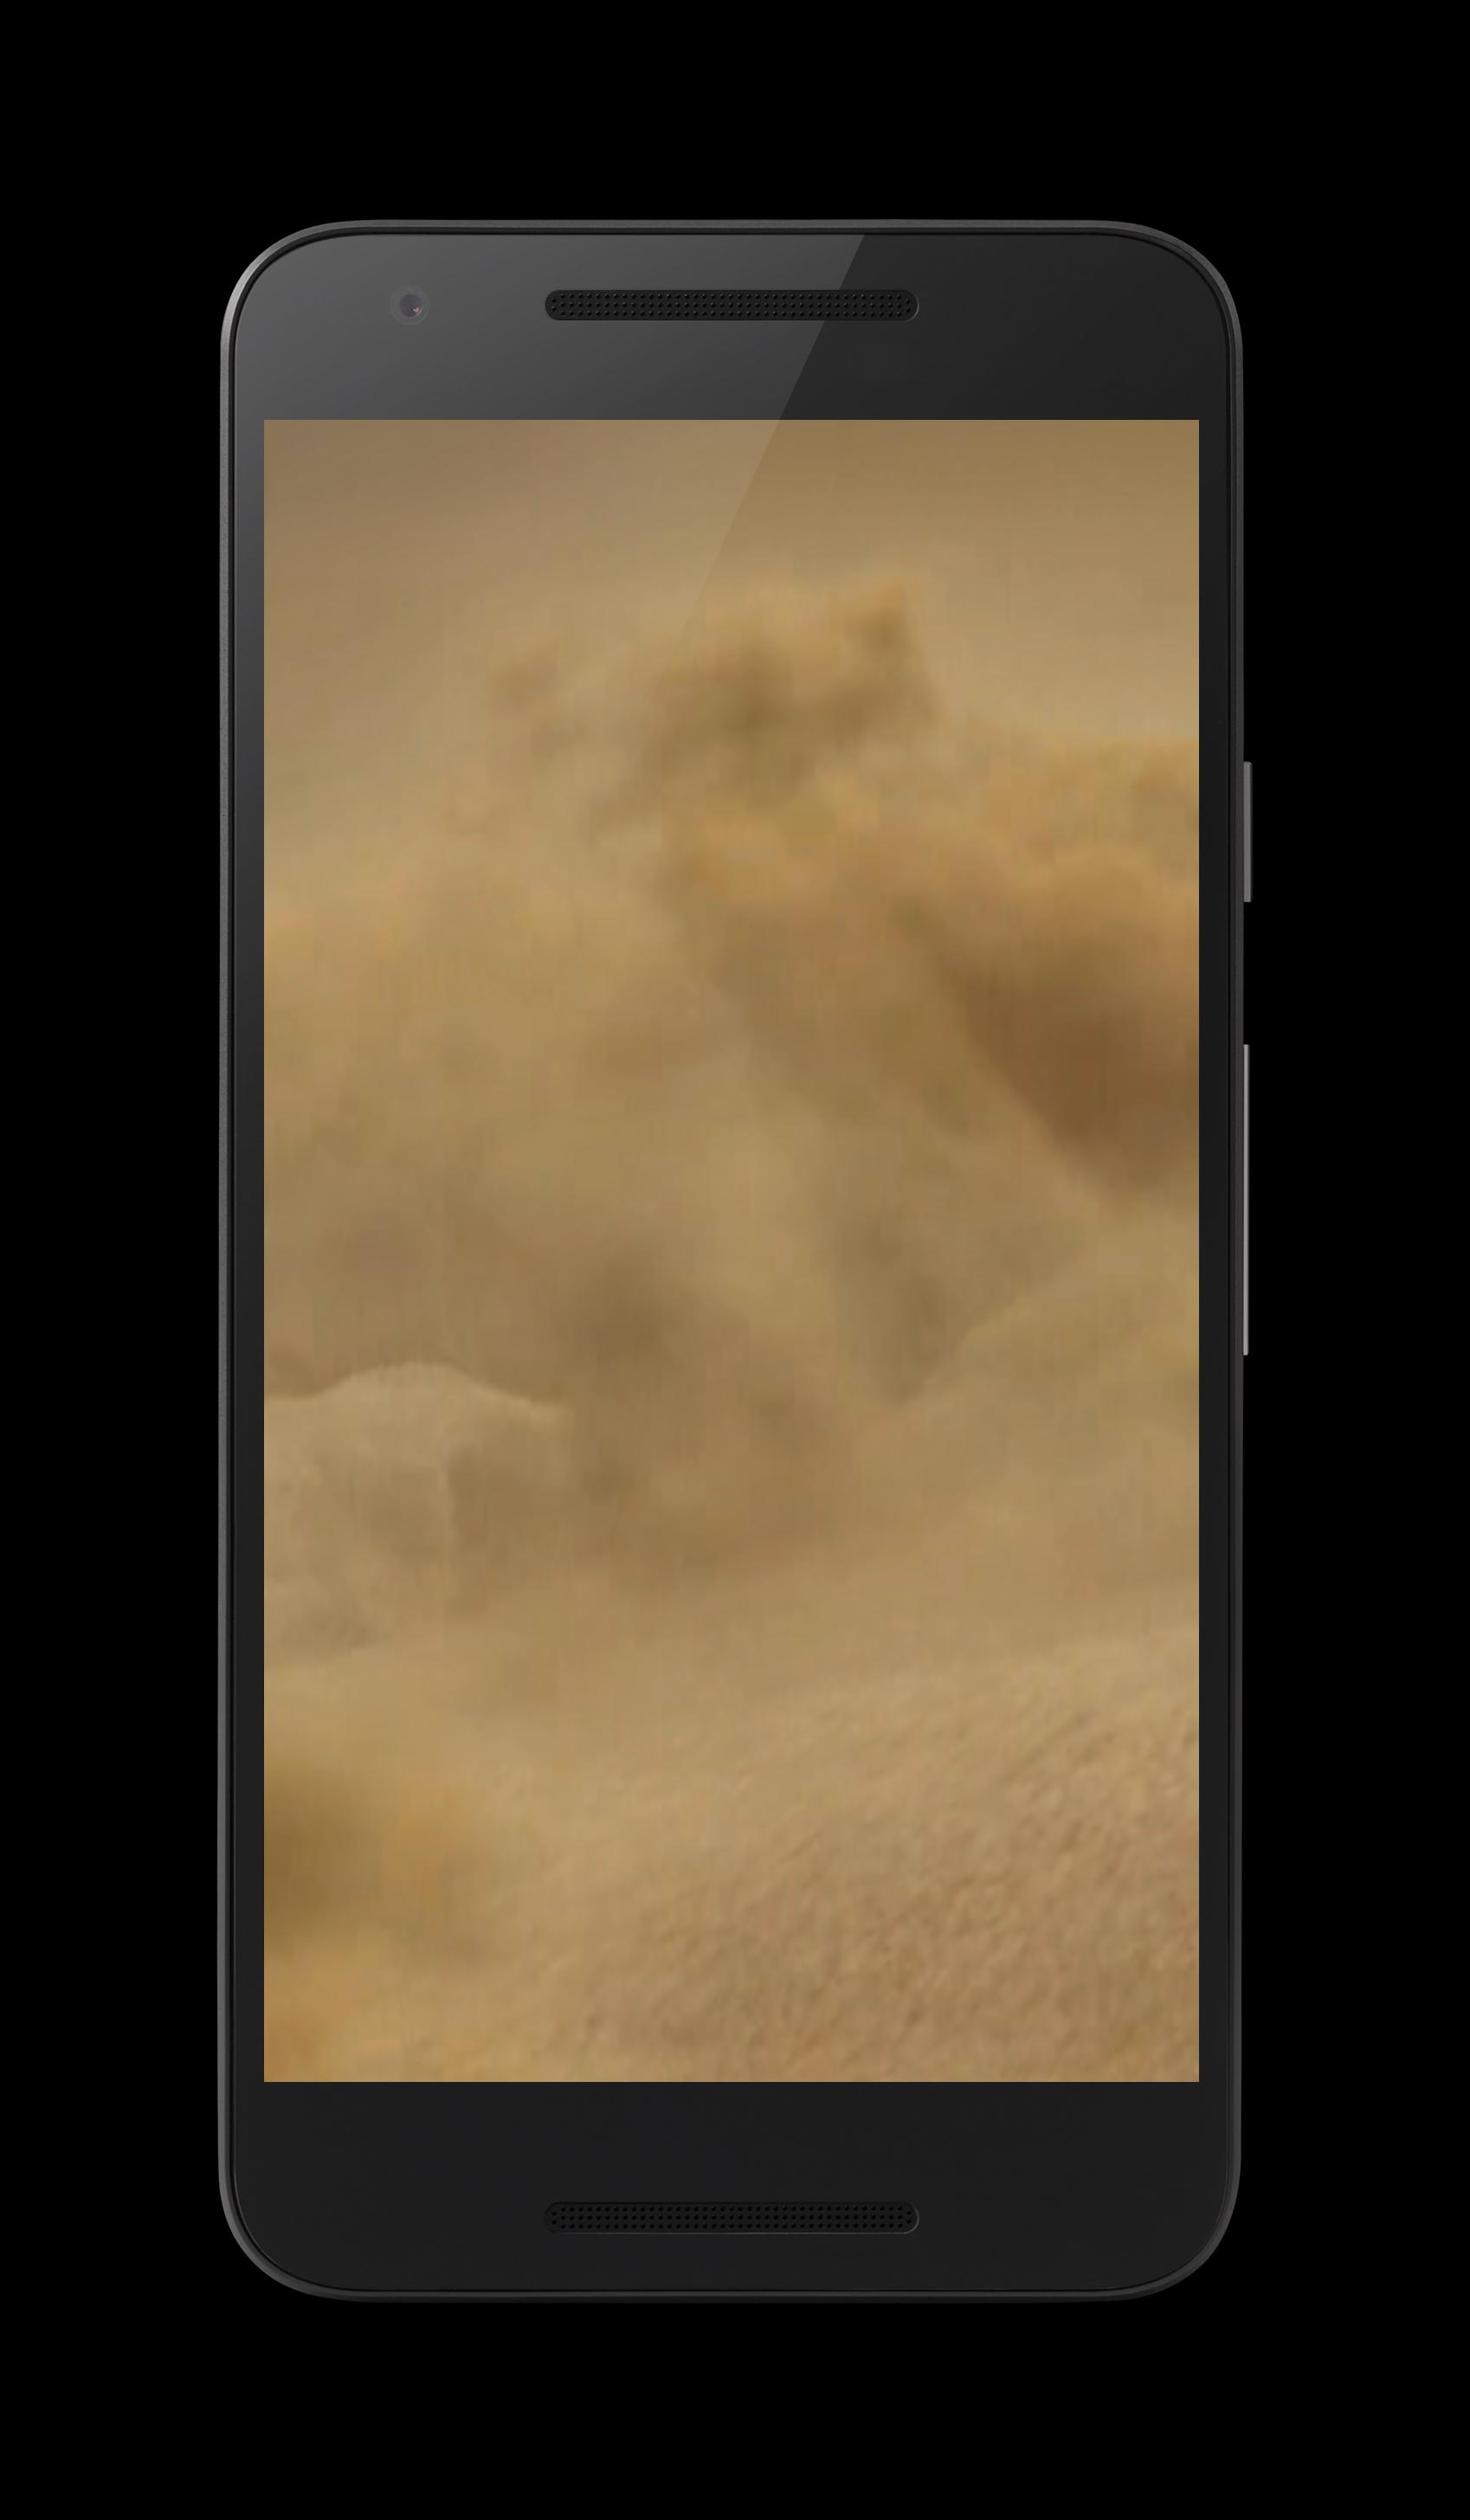 Android 用の 砂漠のライブ壁紙 Apk をダウンロード